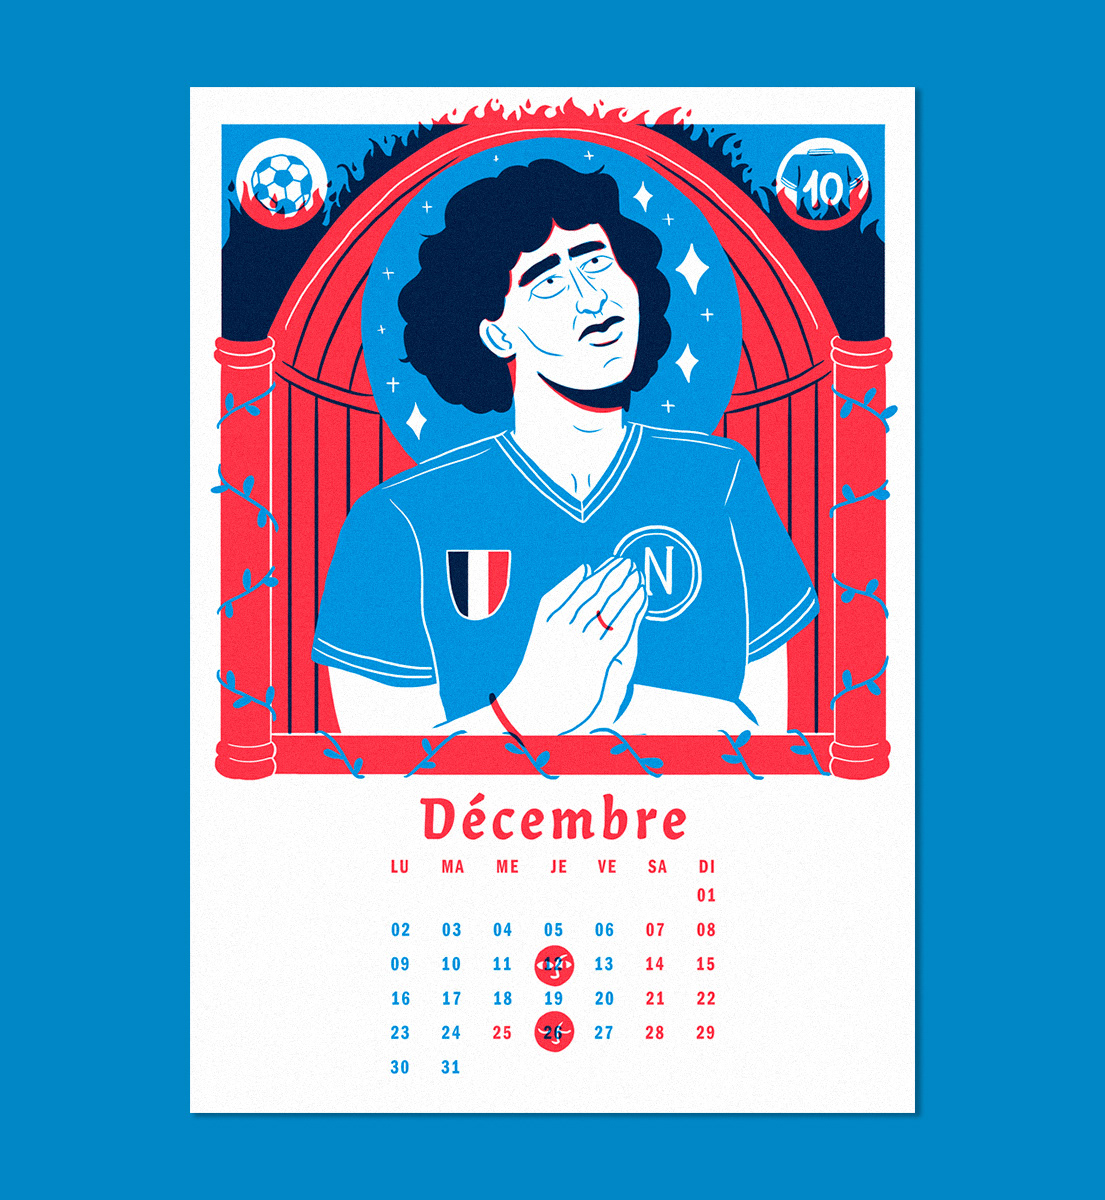 Naples calendar screenprint screenprinted calendrier sérigraphie Italy maradona football religion